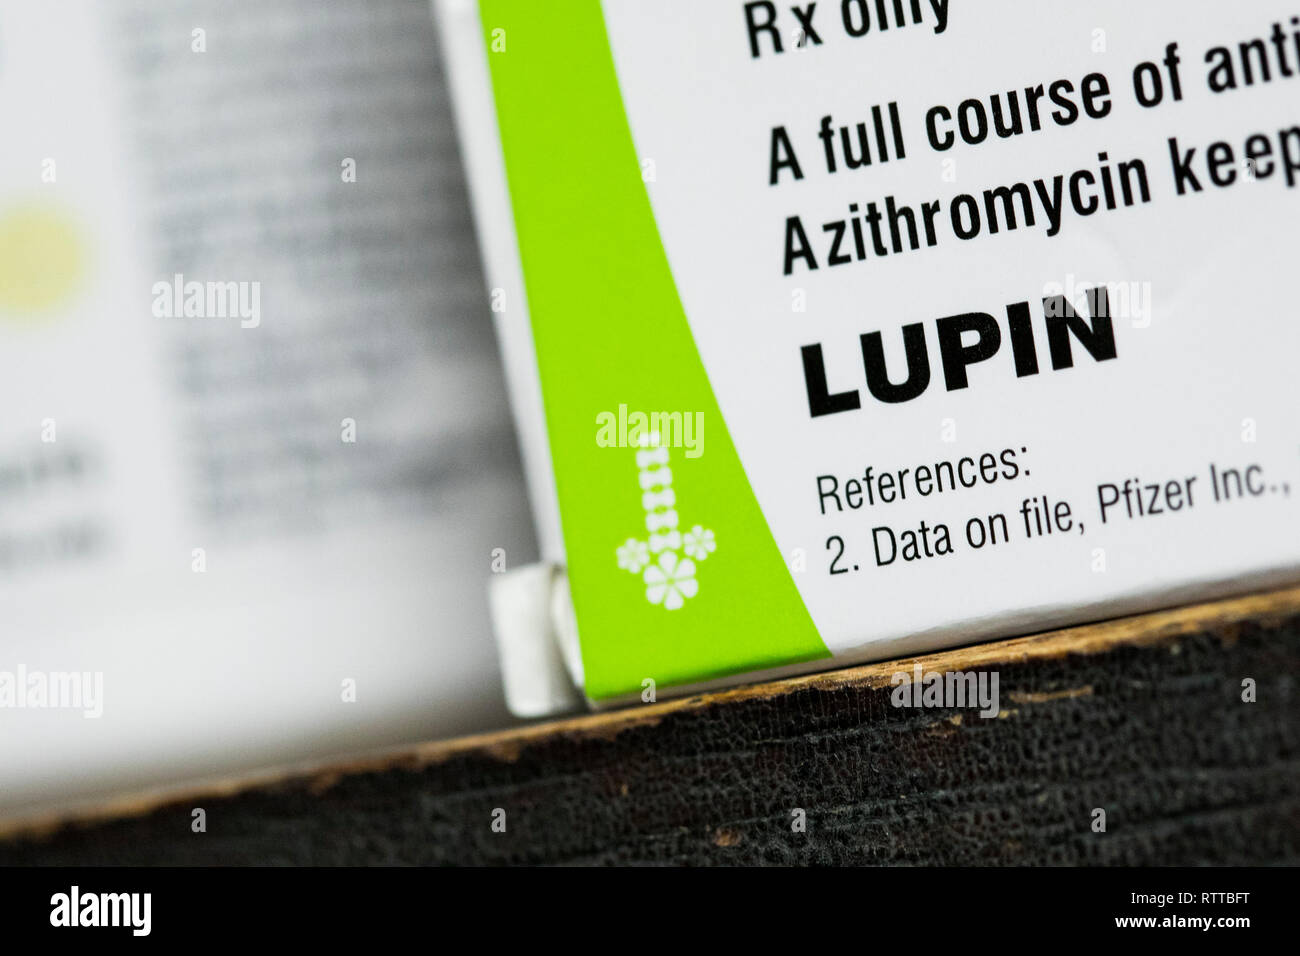 Un lupin Pharmaceuticals logo est visible sur l'emballage de produits pharmaceutiques sur ordonnance photographié dans une pharmacie. Banque D'Images